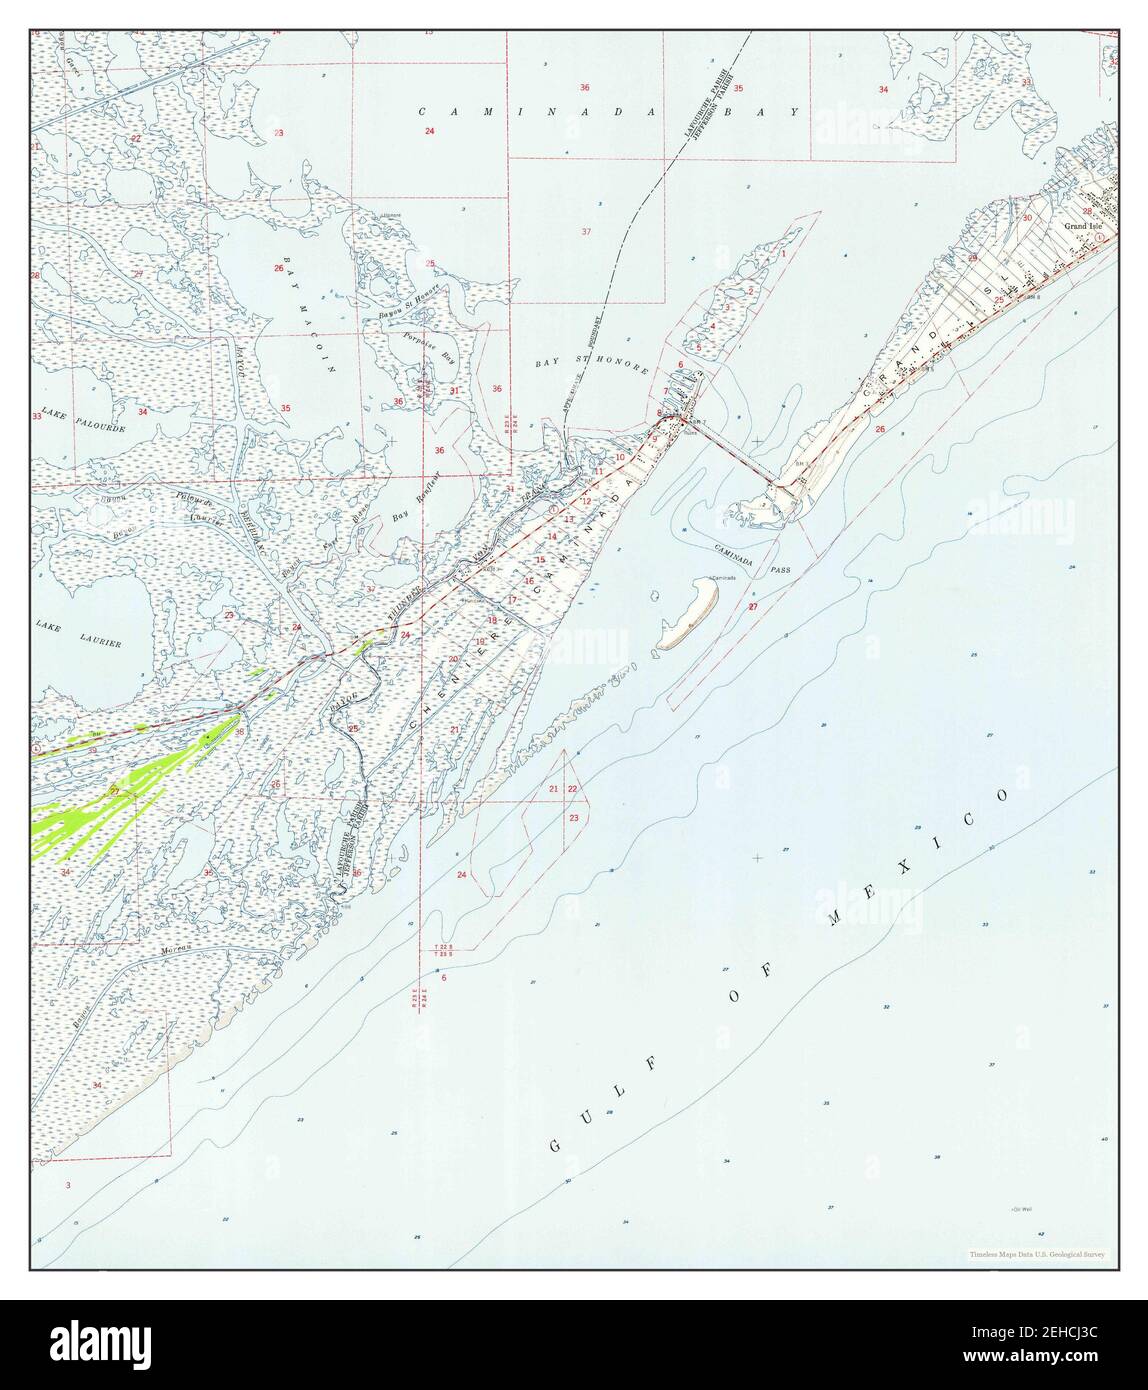 Caminada Pass, Louisiana, Karte 1957, 1:24000, Vereinigte Staaten von Amerika von Timeless Maps, Daten U.S. Geological Survey Stockfoto